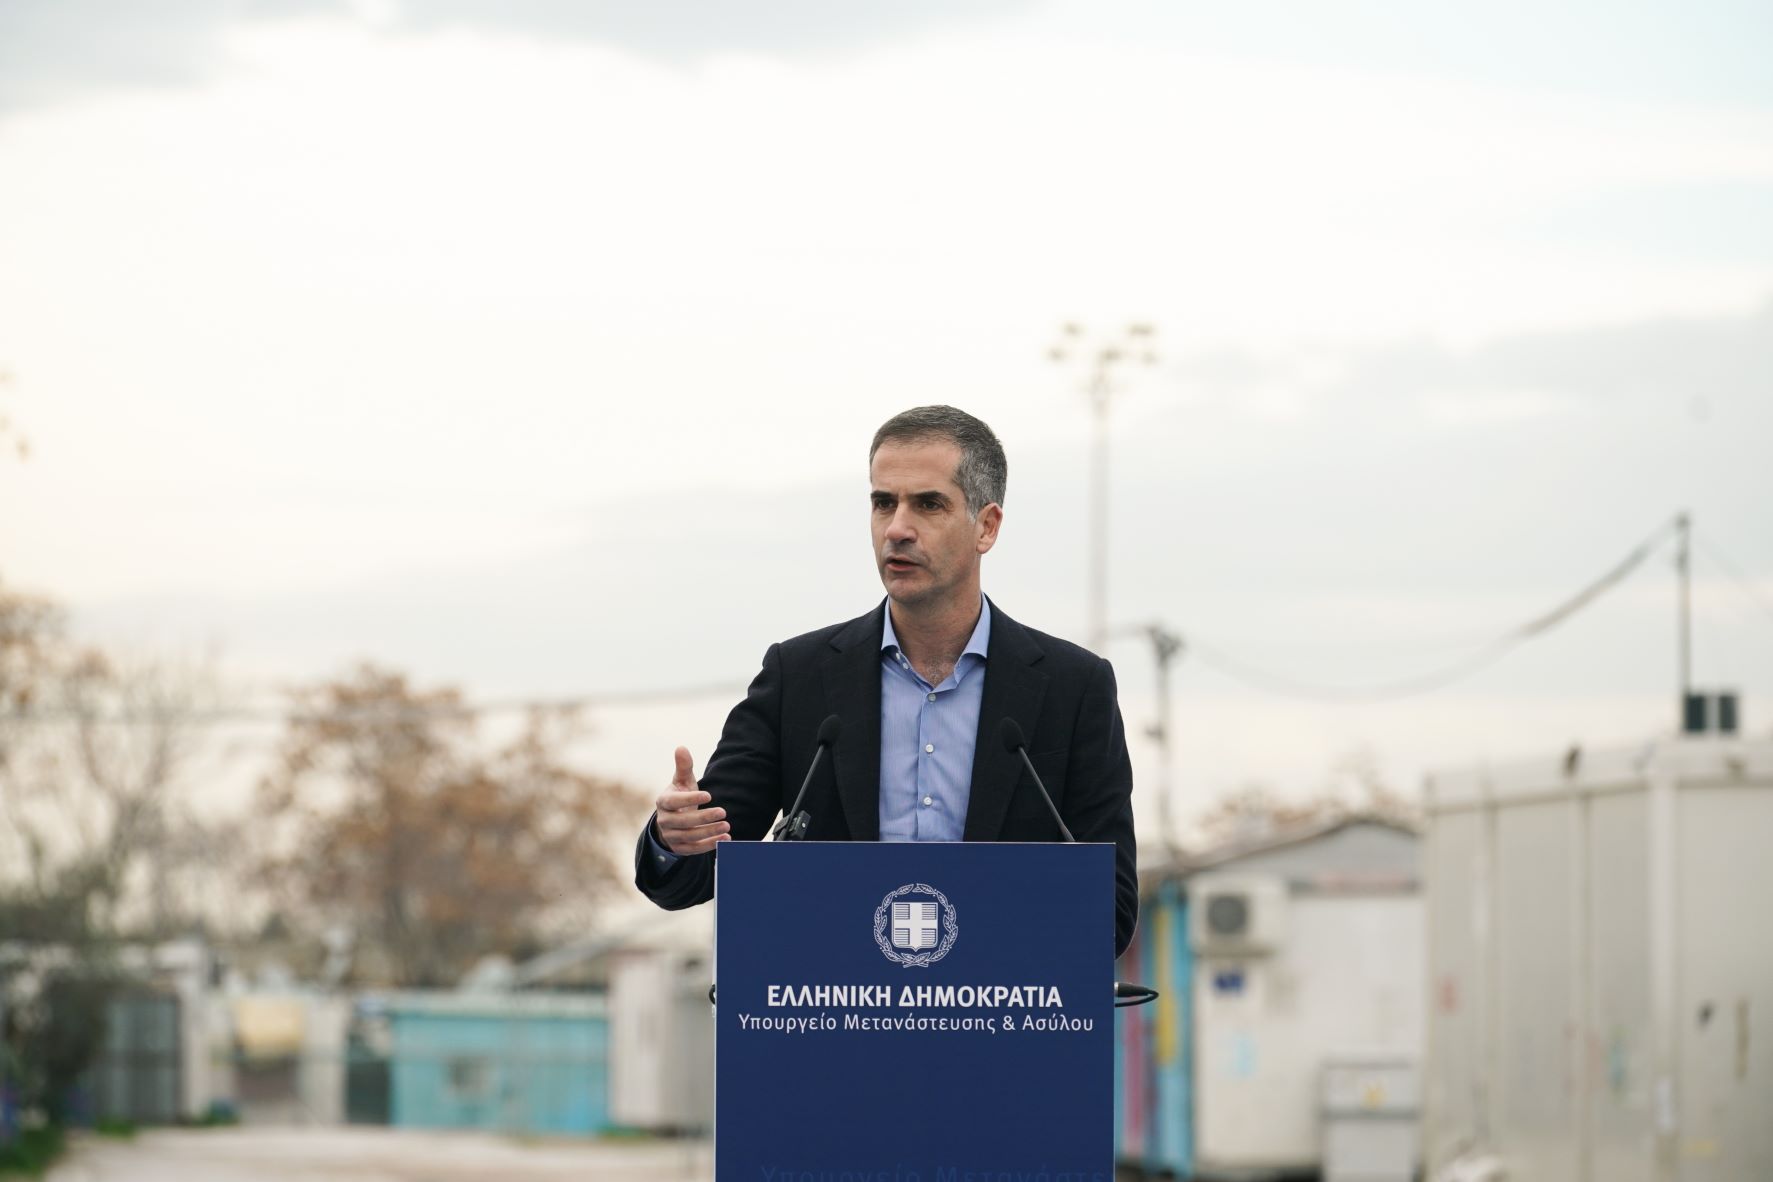 Ο Δήμος Αθηναίων παρέλαβε την έκταση του Ελαιώνα από το Υπουργείο Μετανάστευσης και Ασύλου